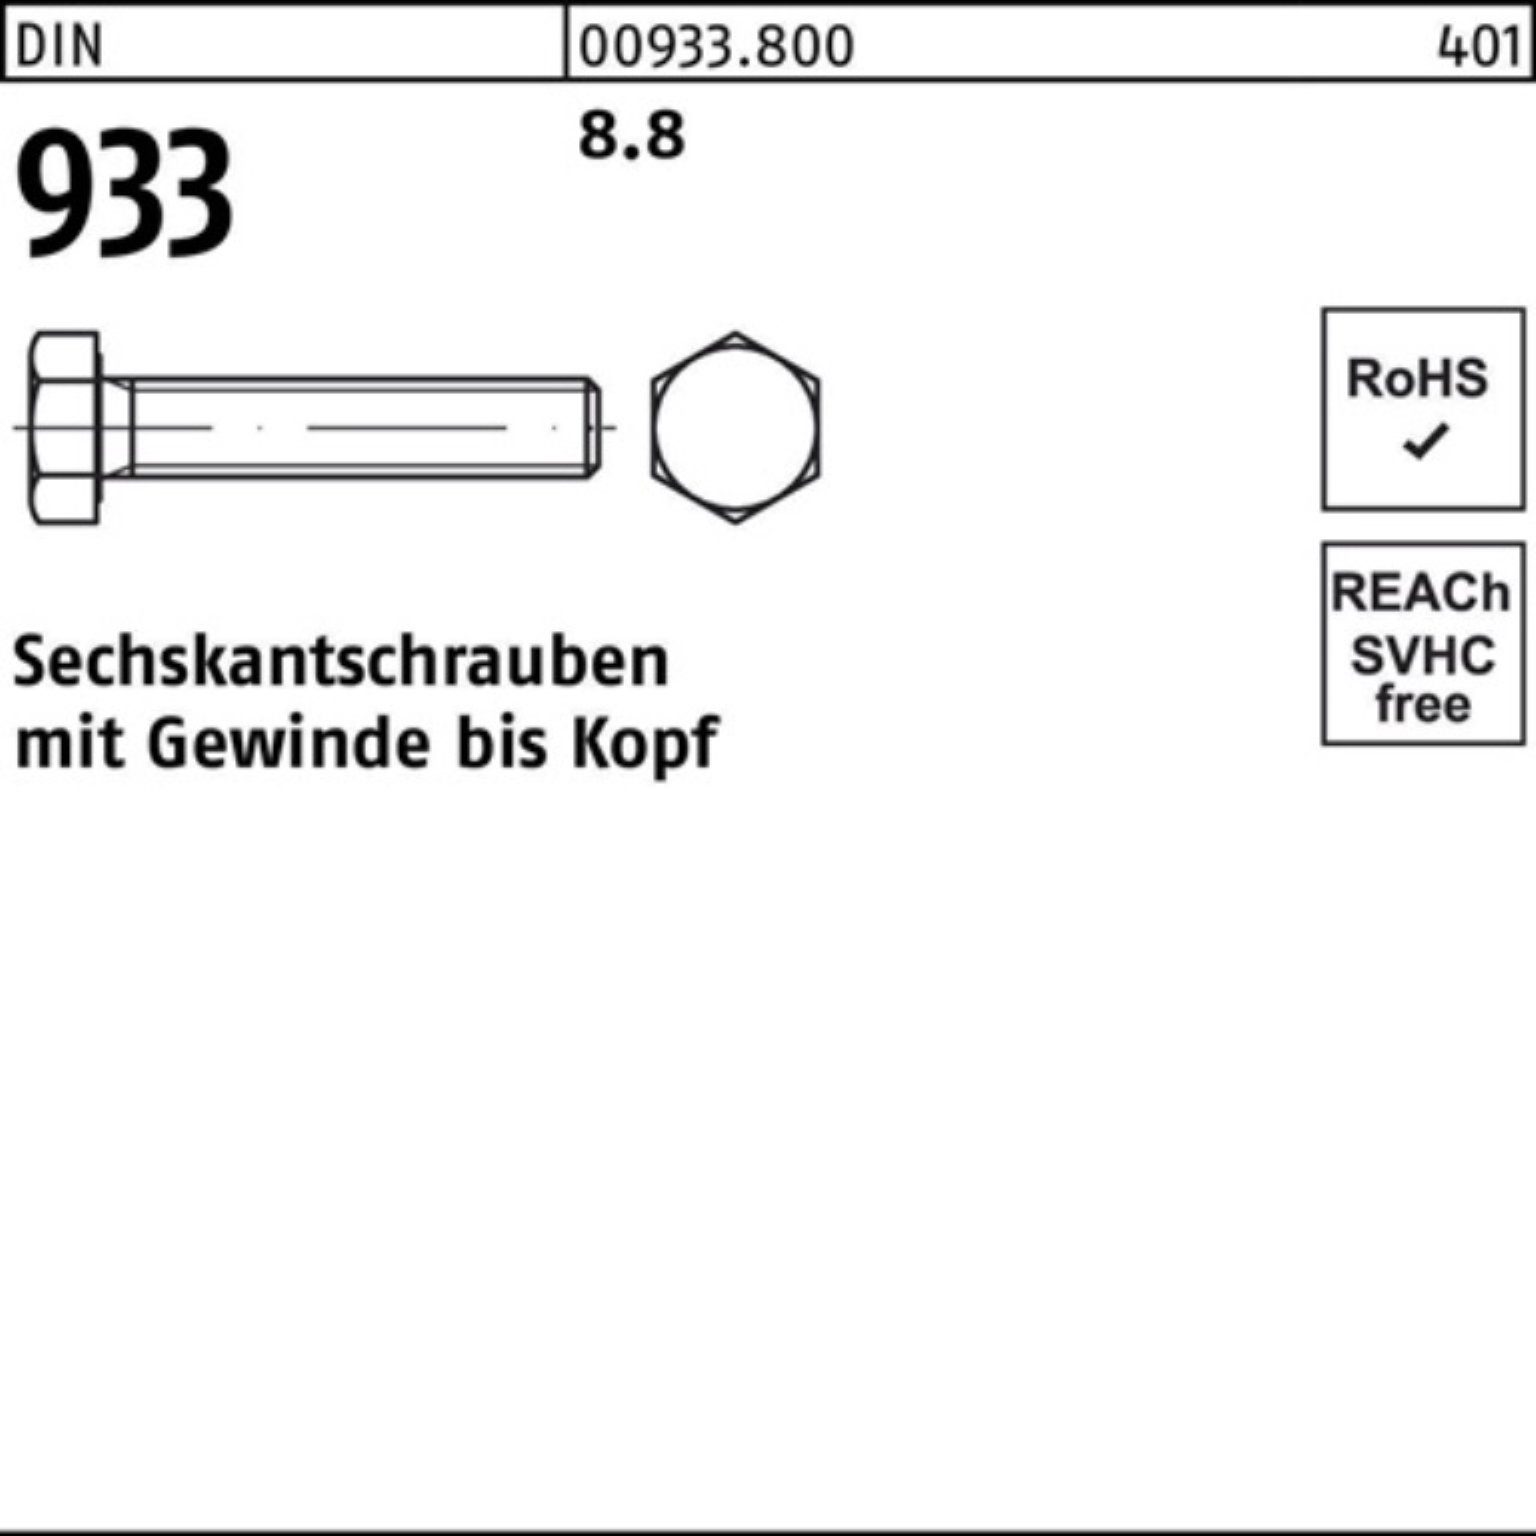 Reyher Sechskantschraube 100er Sechskantschraube Stück M22x DIN DIN VG 25 933 933 Pack 8.8 35